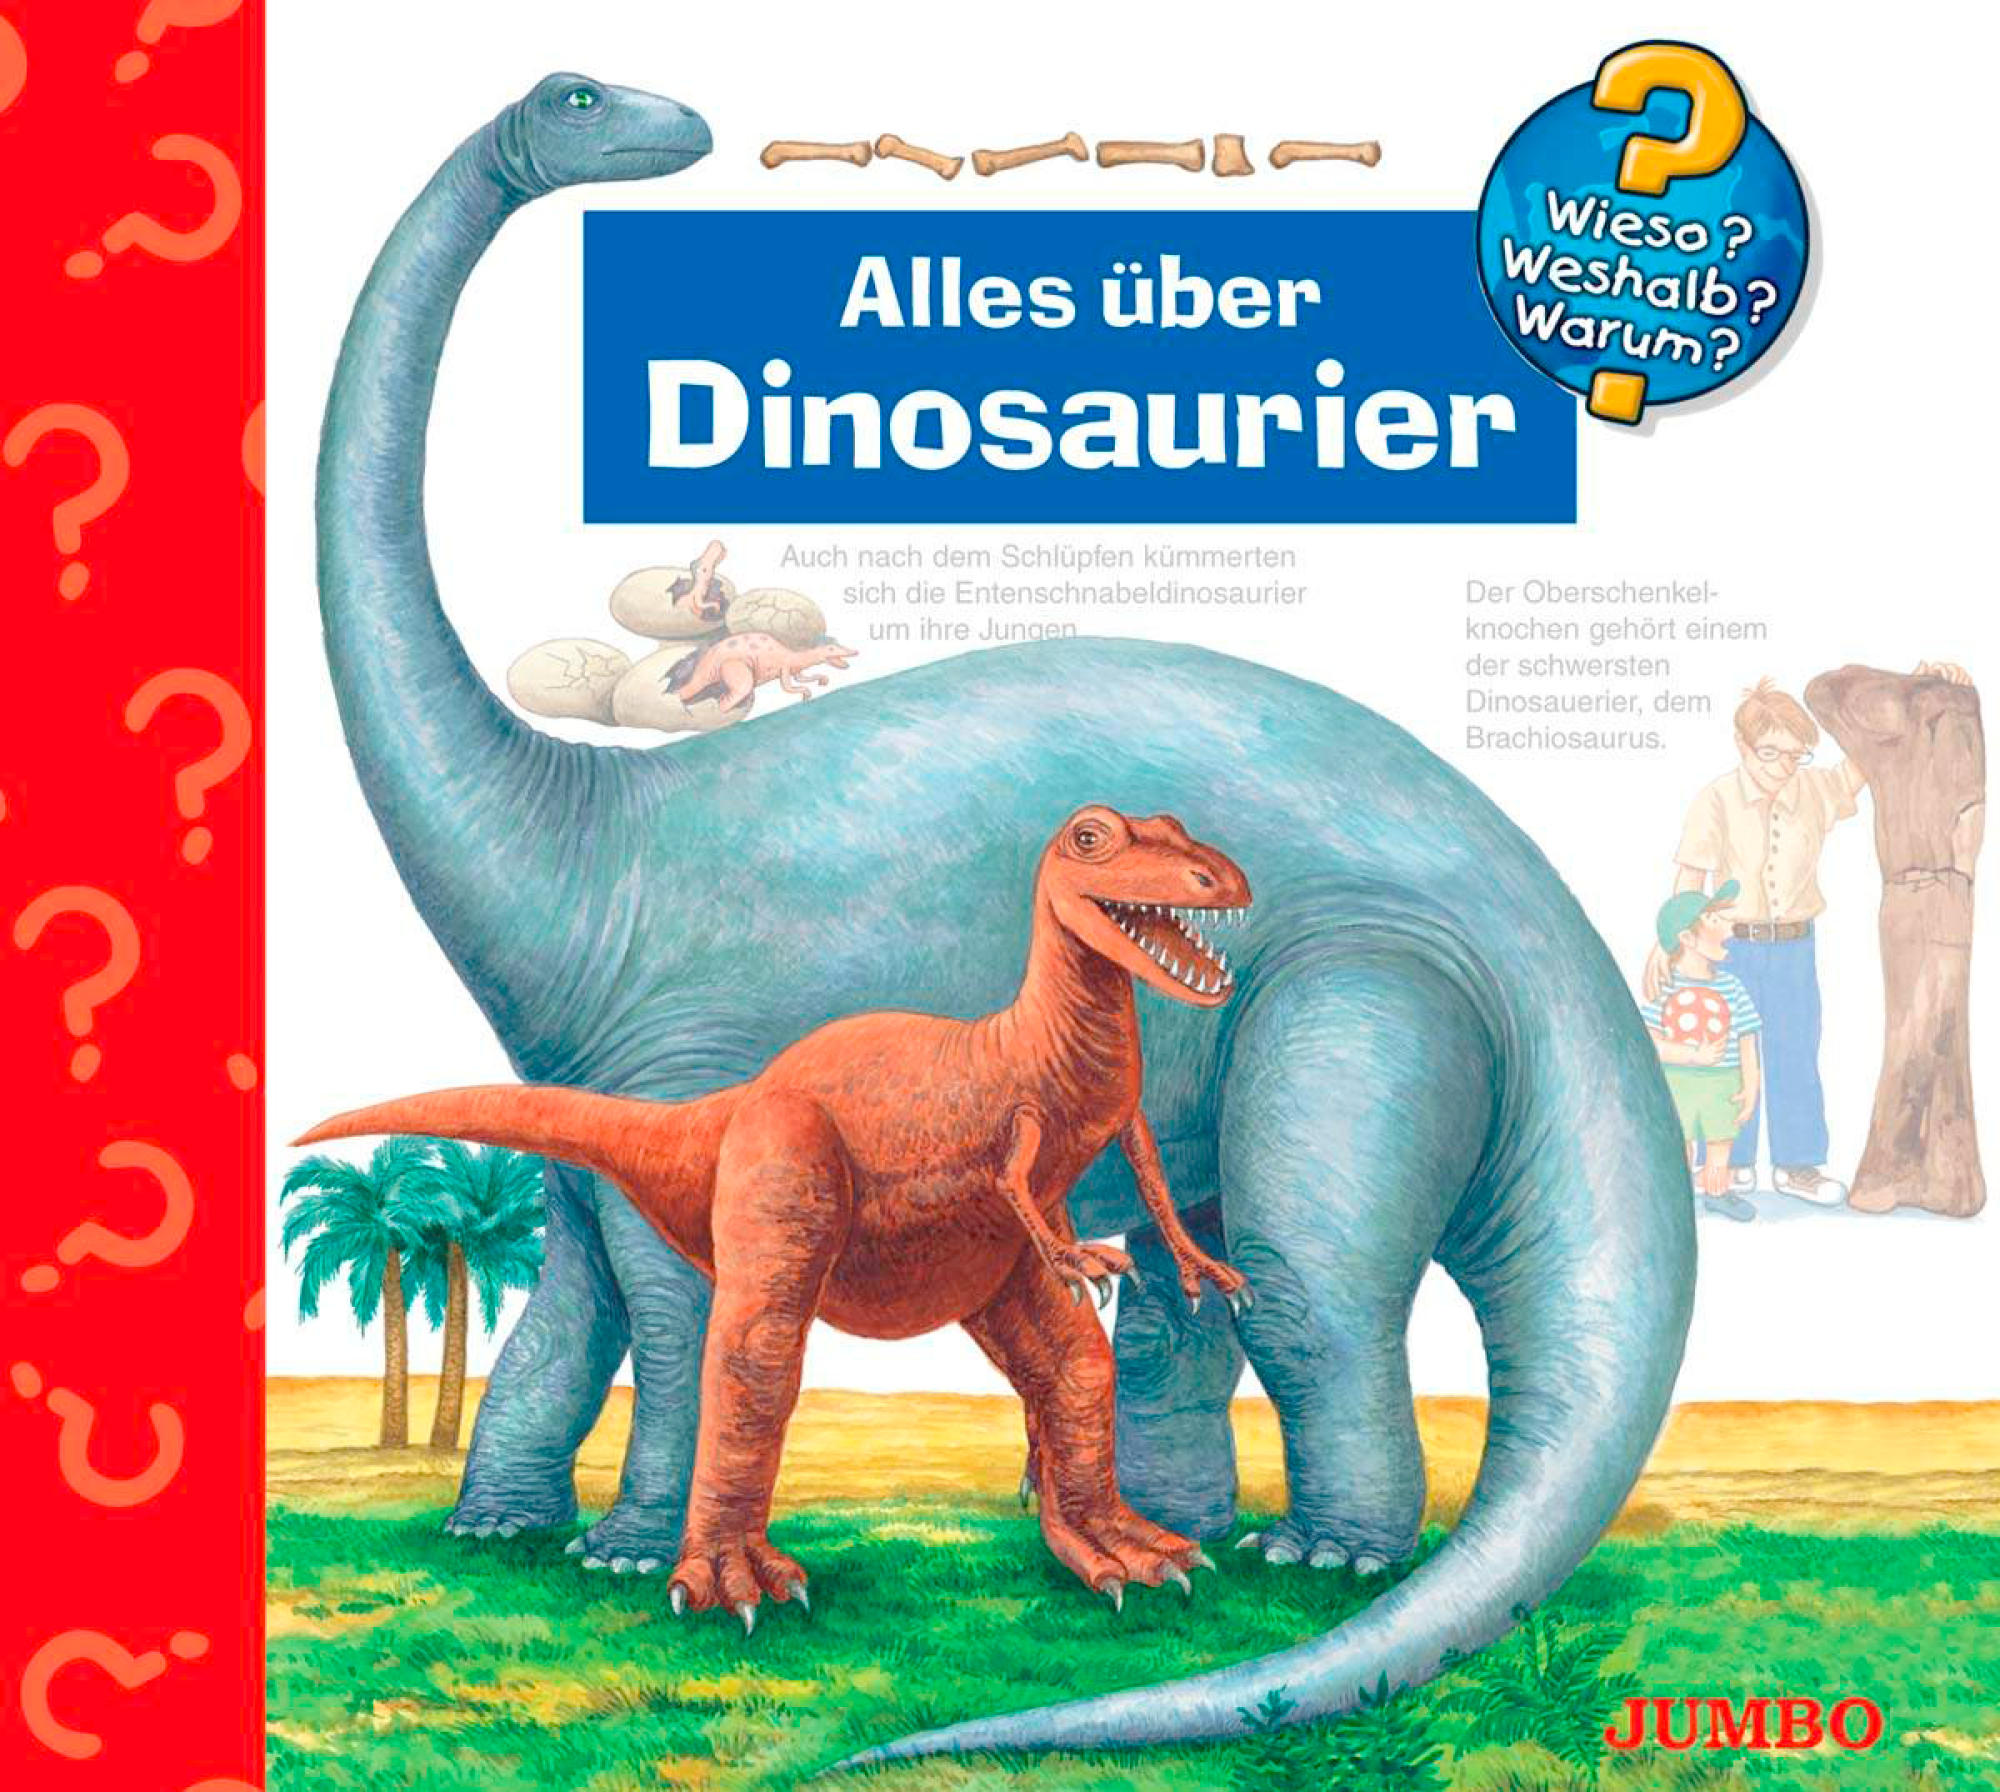 Dinosaurier über Alles (CD) -